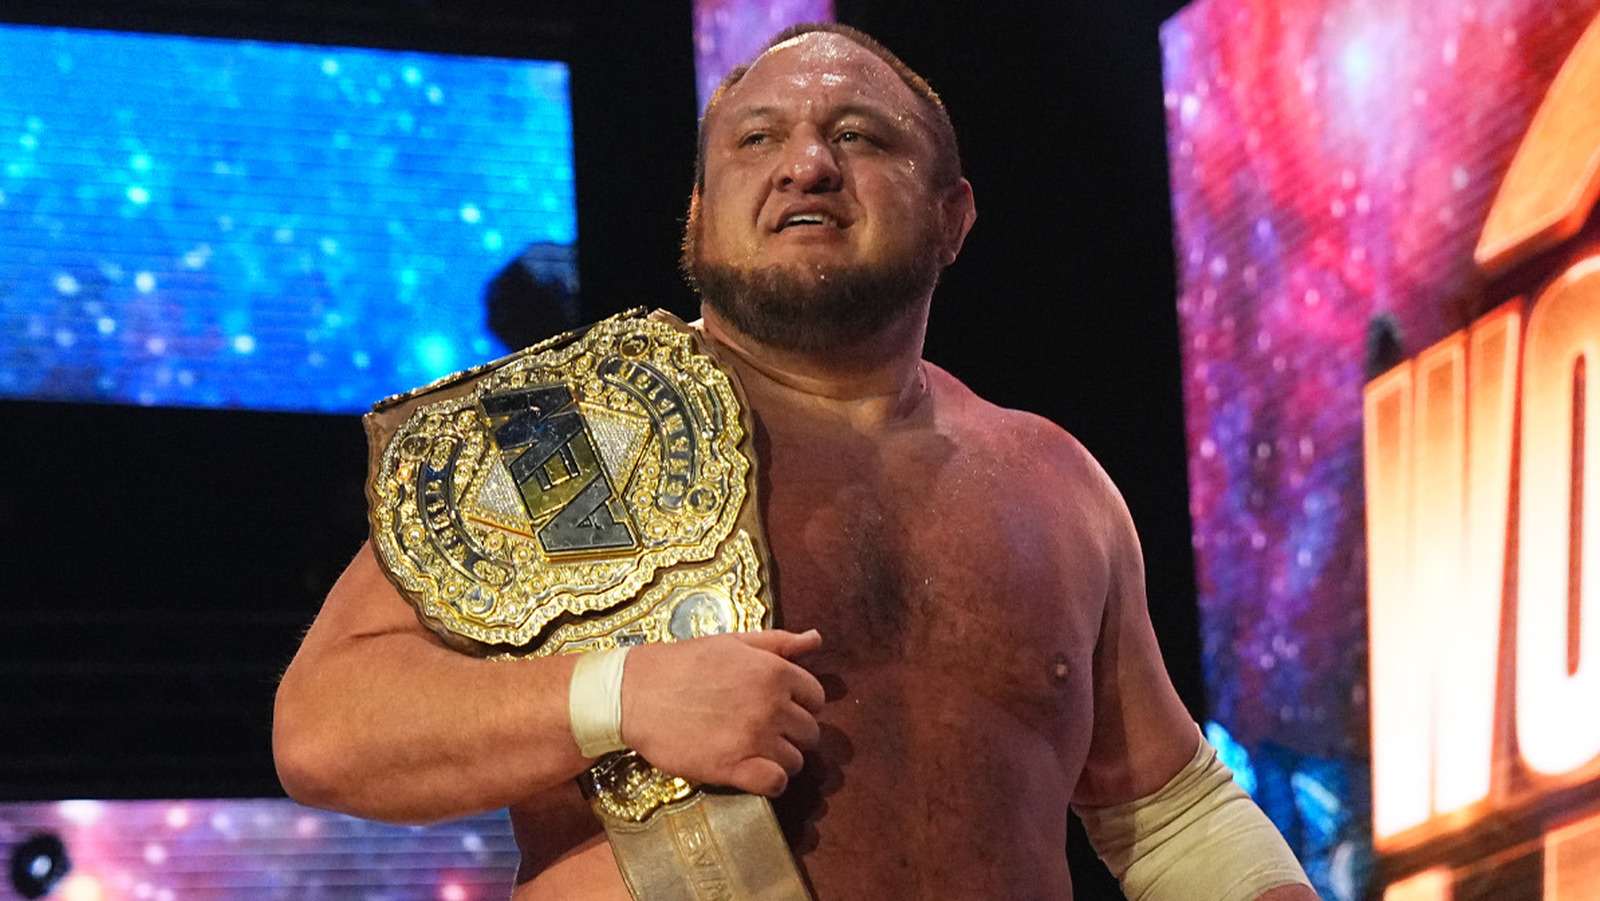 El campeón mundial de AEW, Samoa Joe, reacciona al regreso del sistema de clasificación